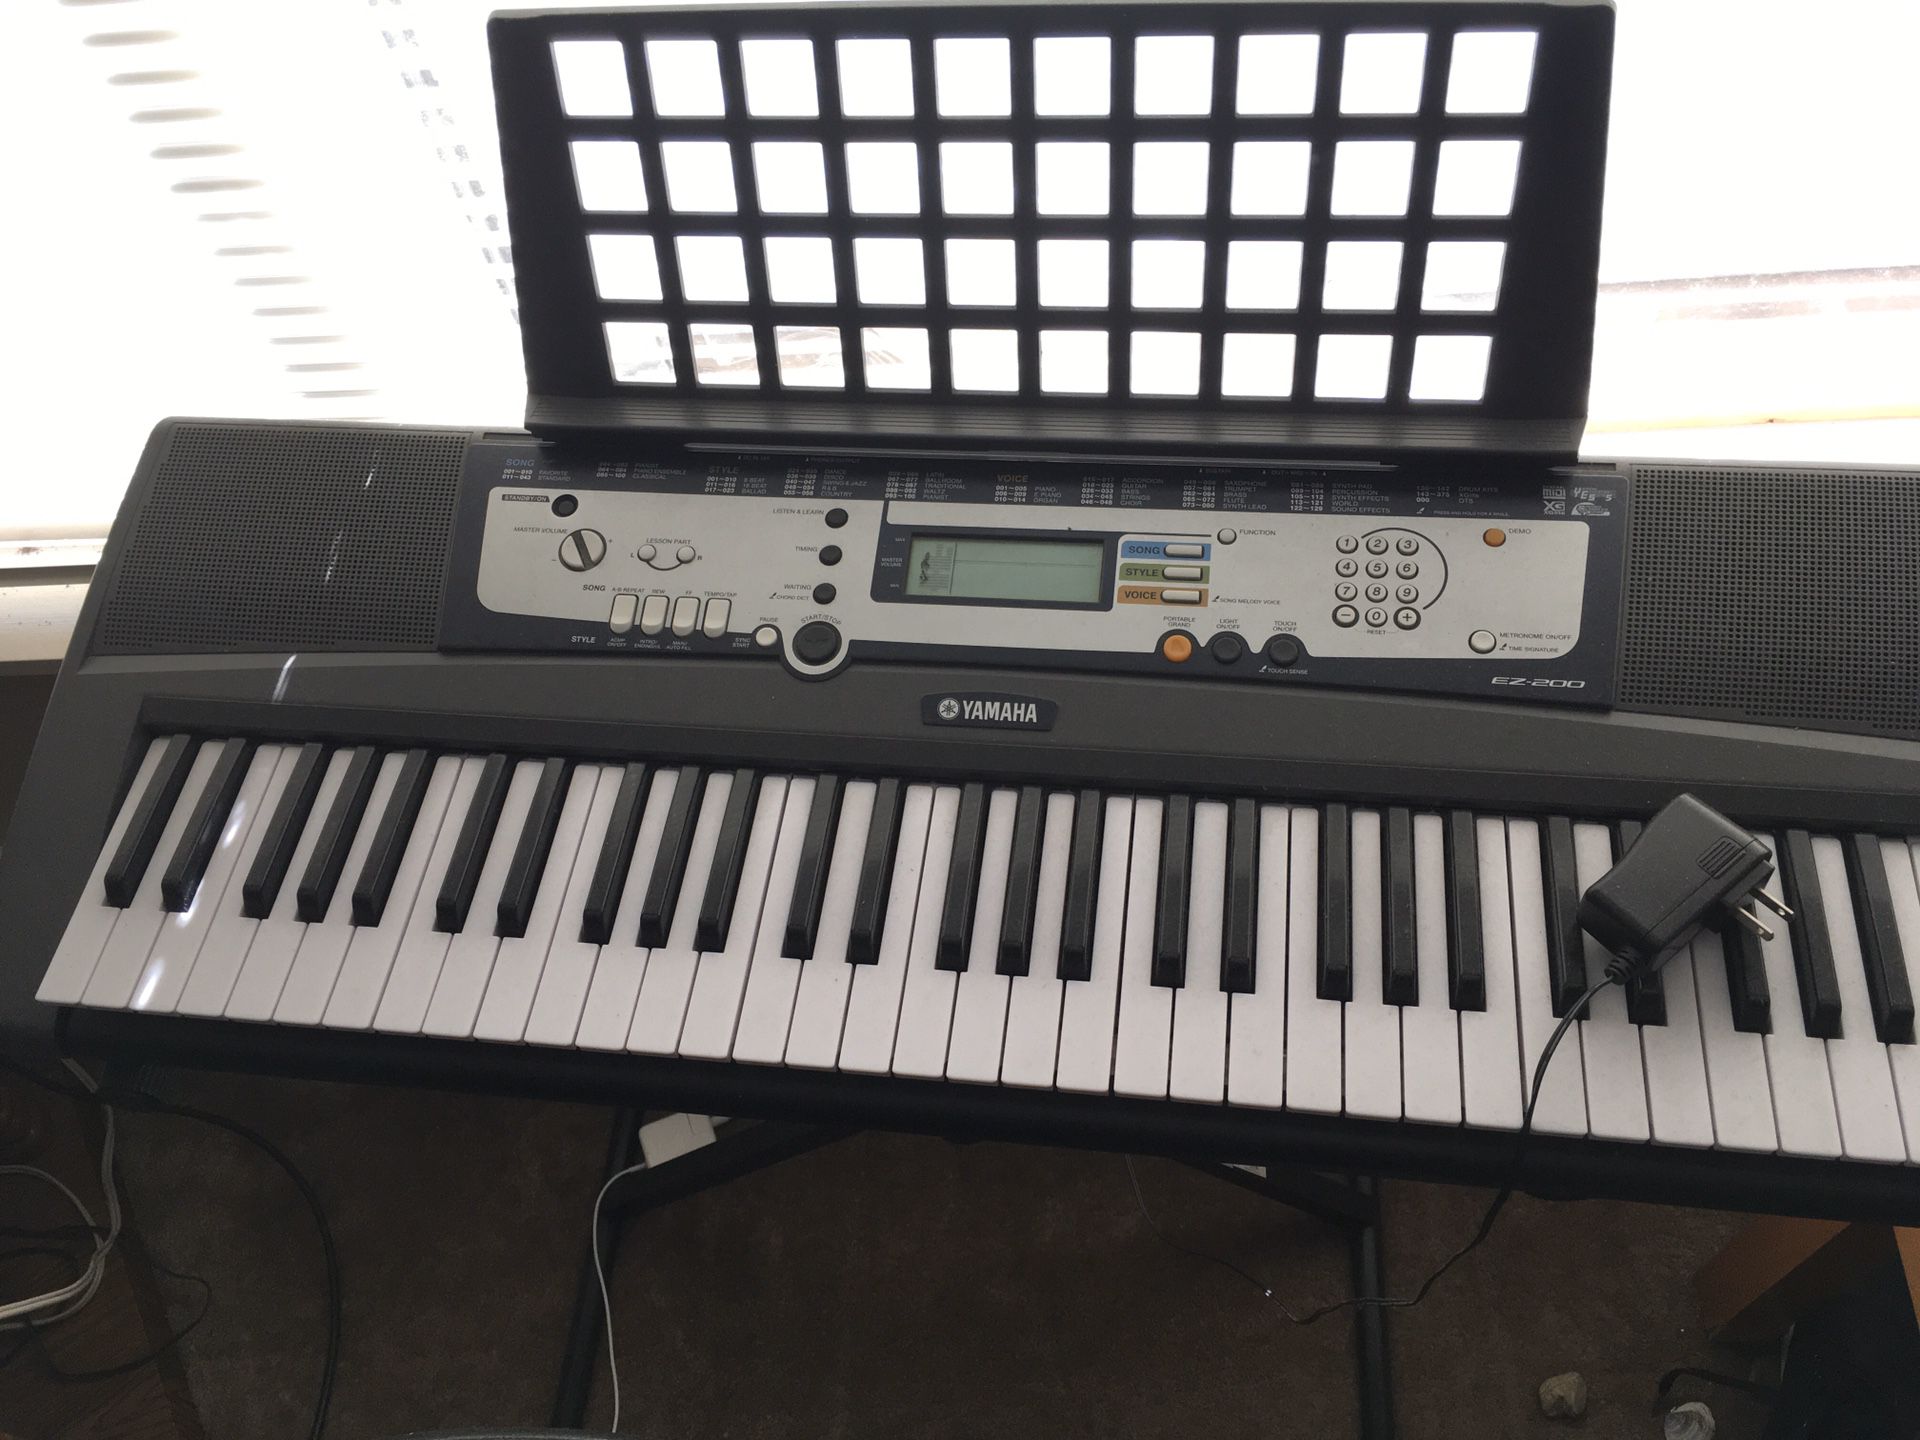 Yamaha EZ-200 music keyboard